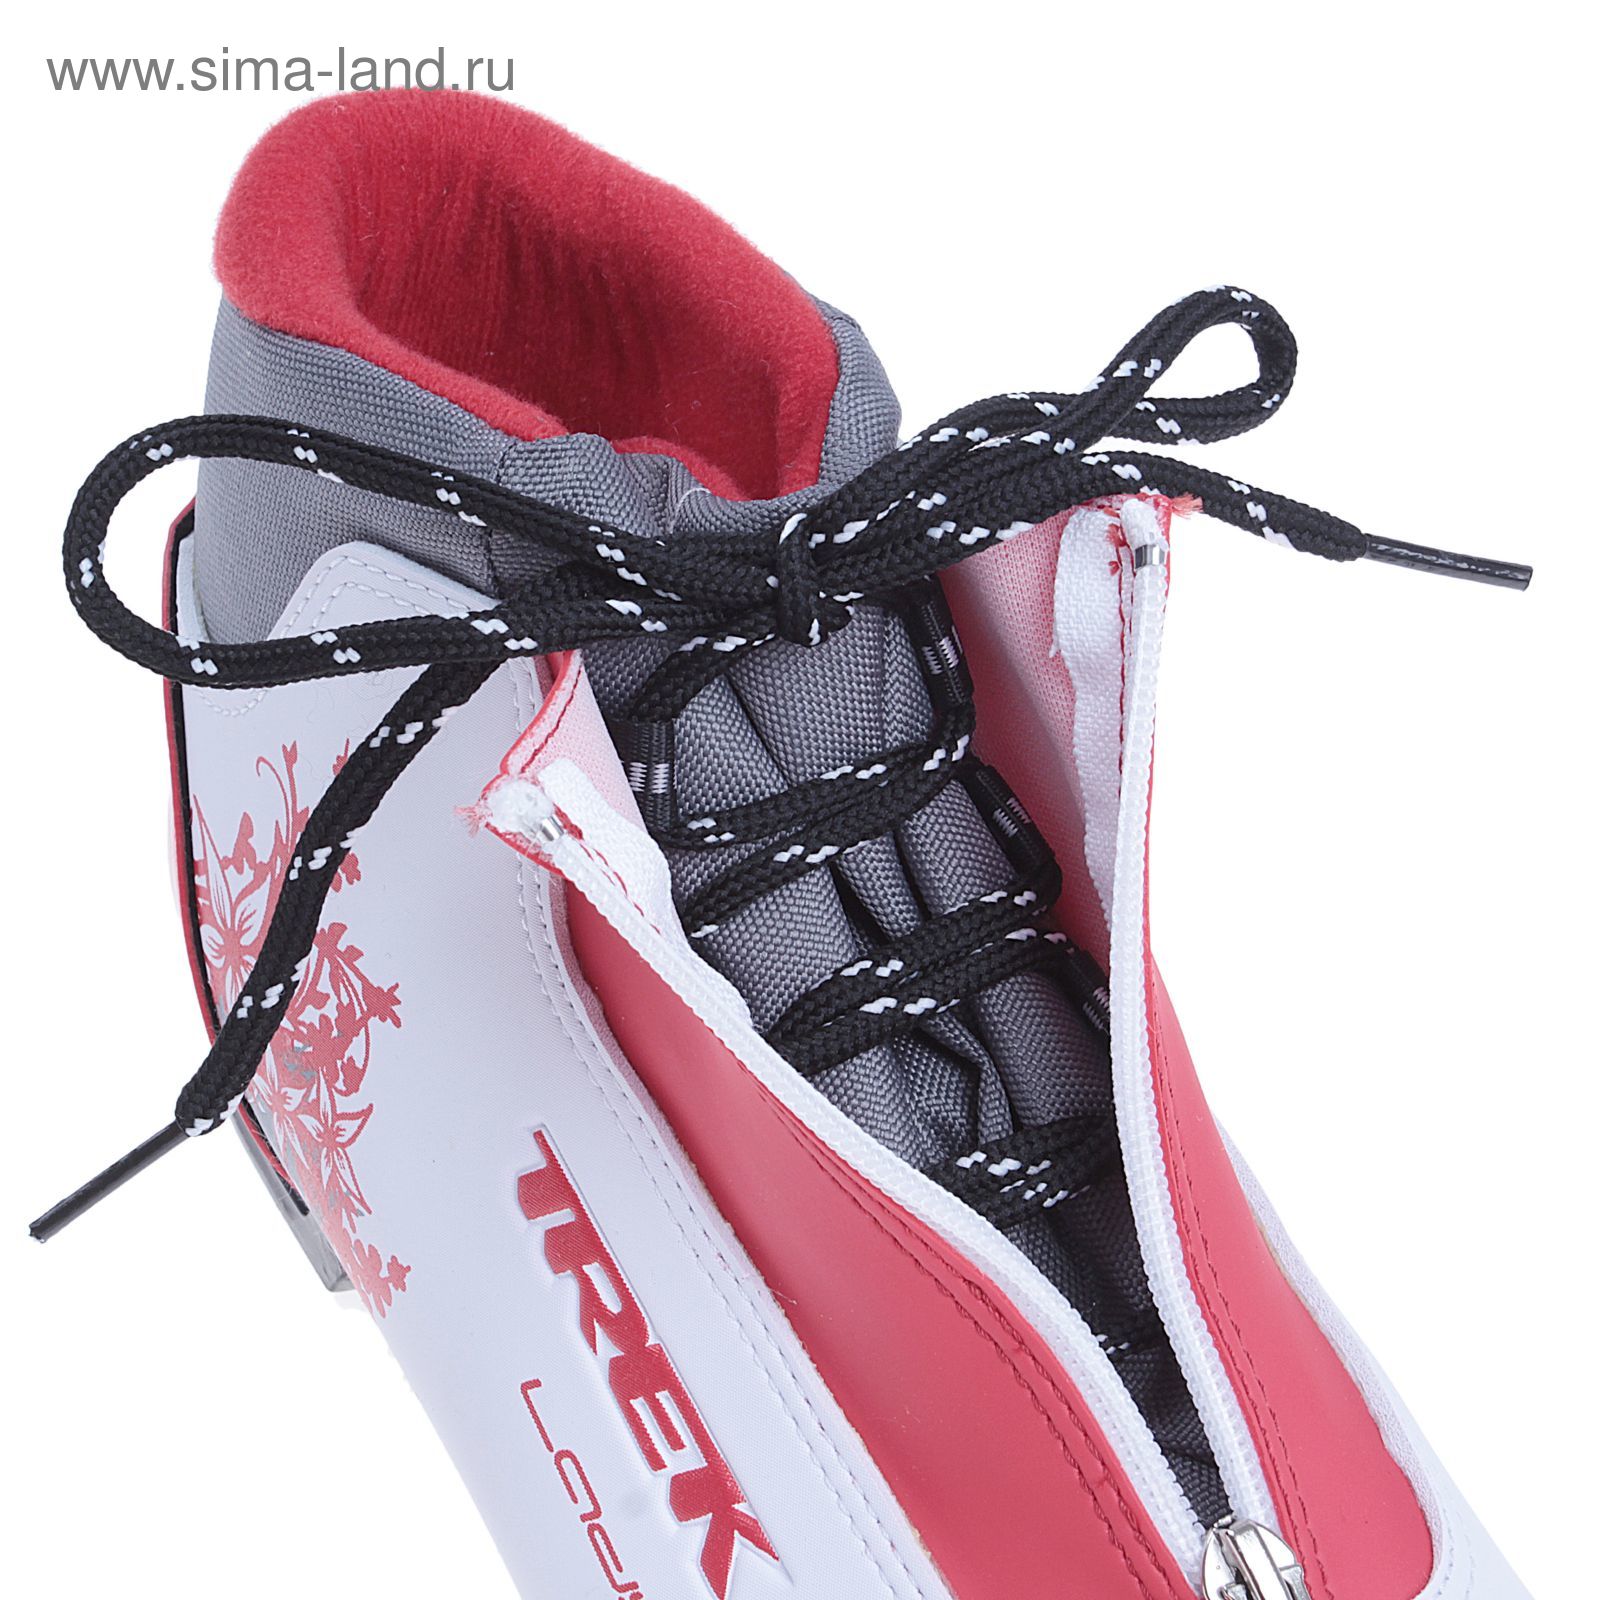 Ботинки лыжные TREK Lady Comfort NN75 ИК (белый, лого красный) (р.42)